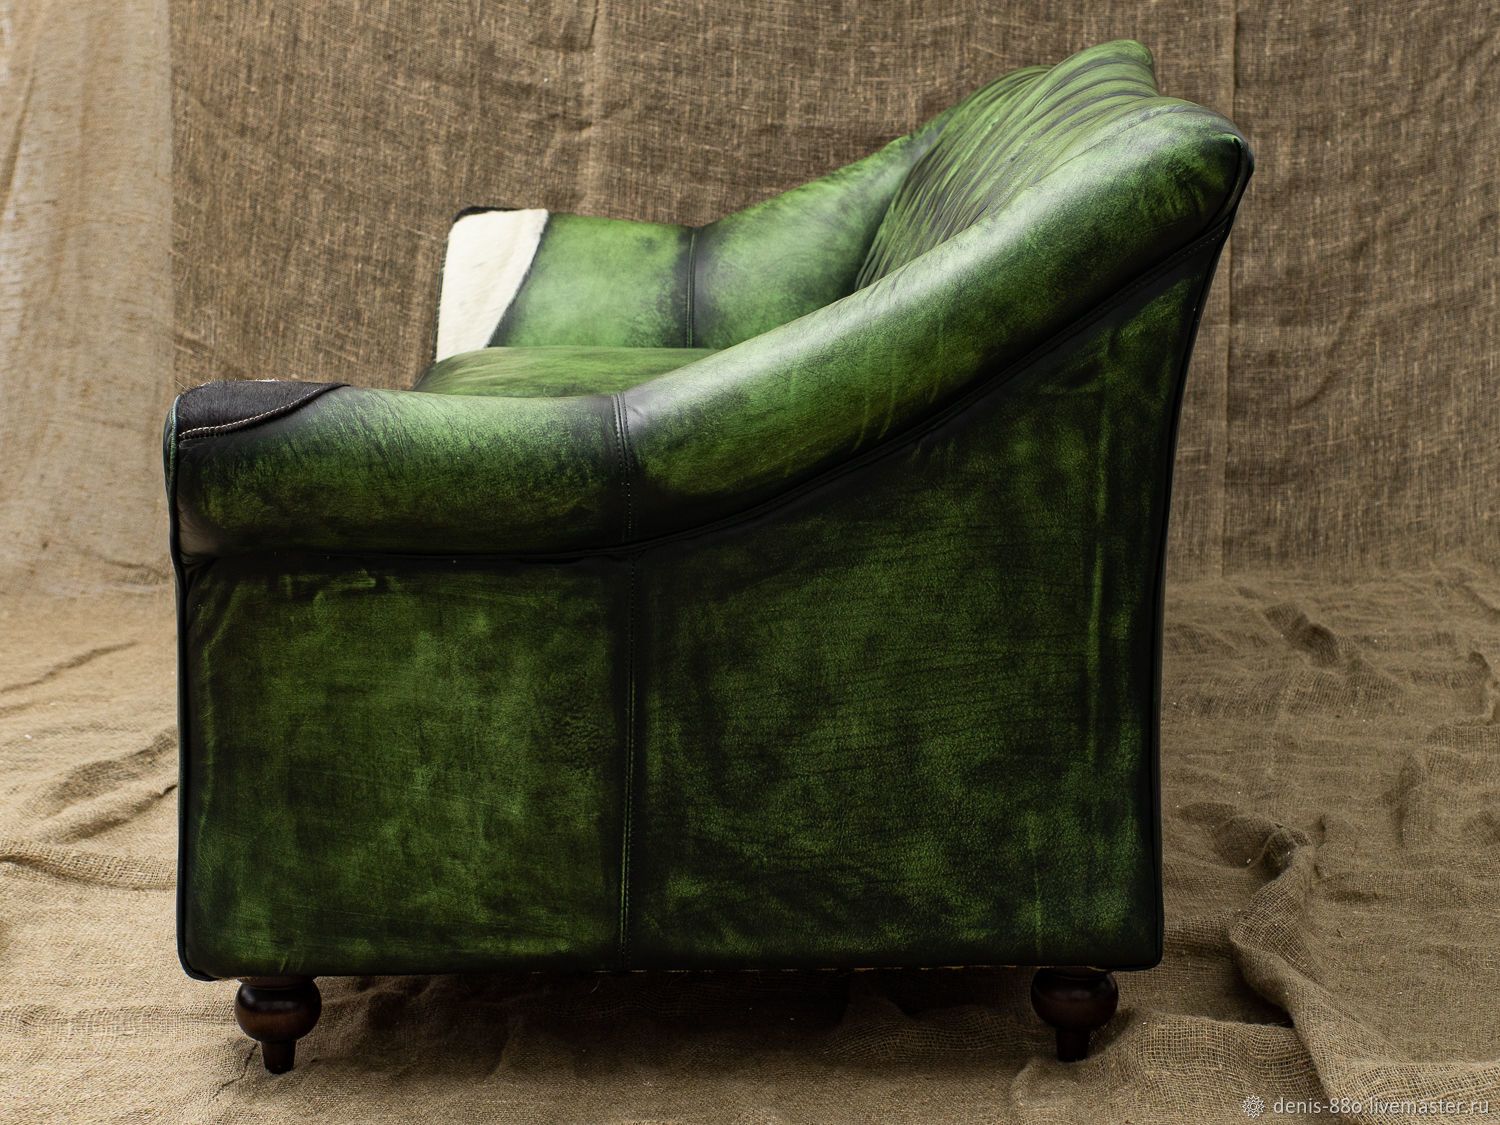 Sofa SERPENTE by Romatti